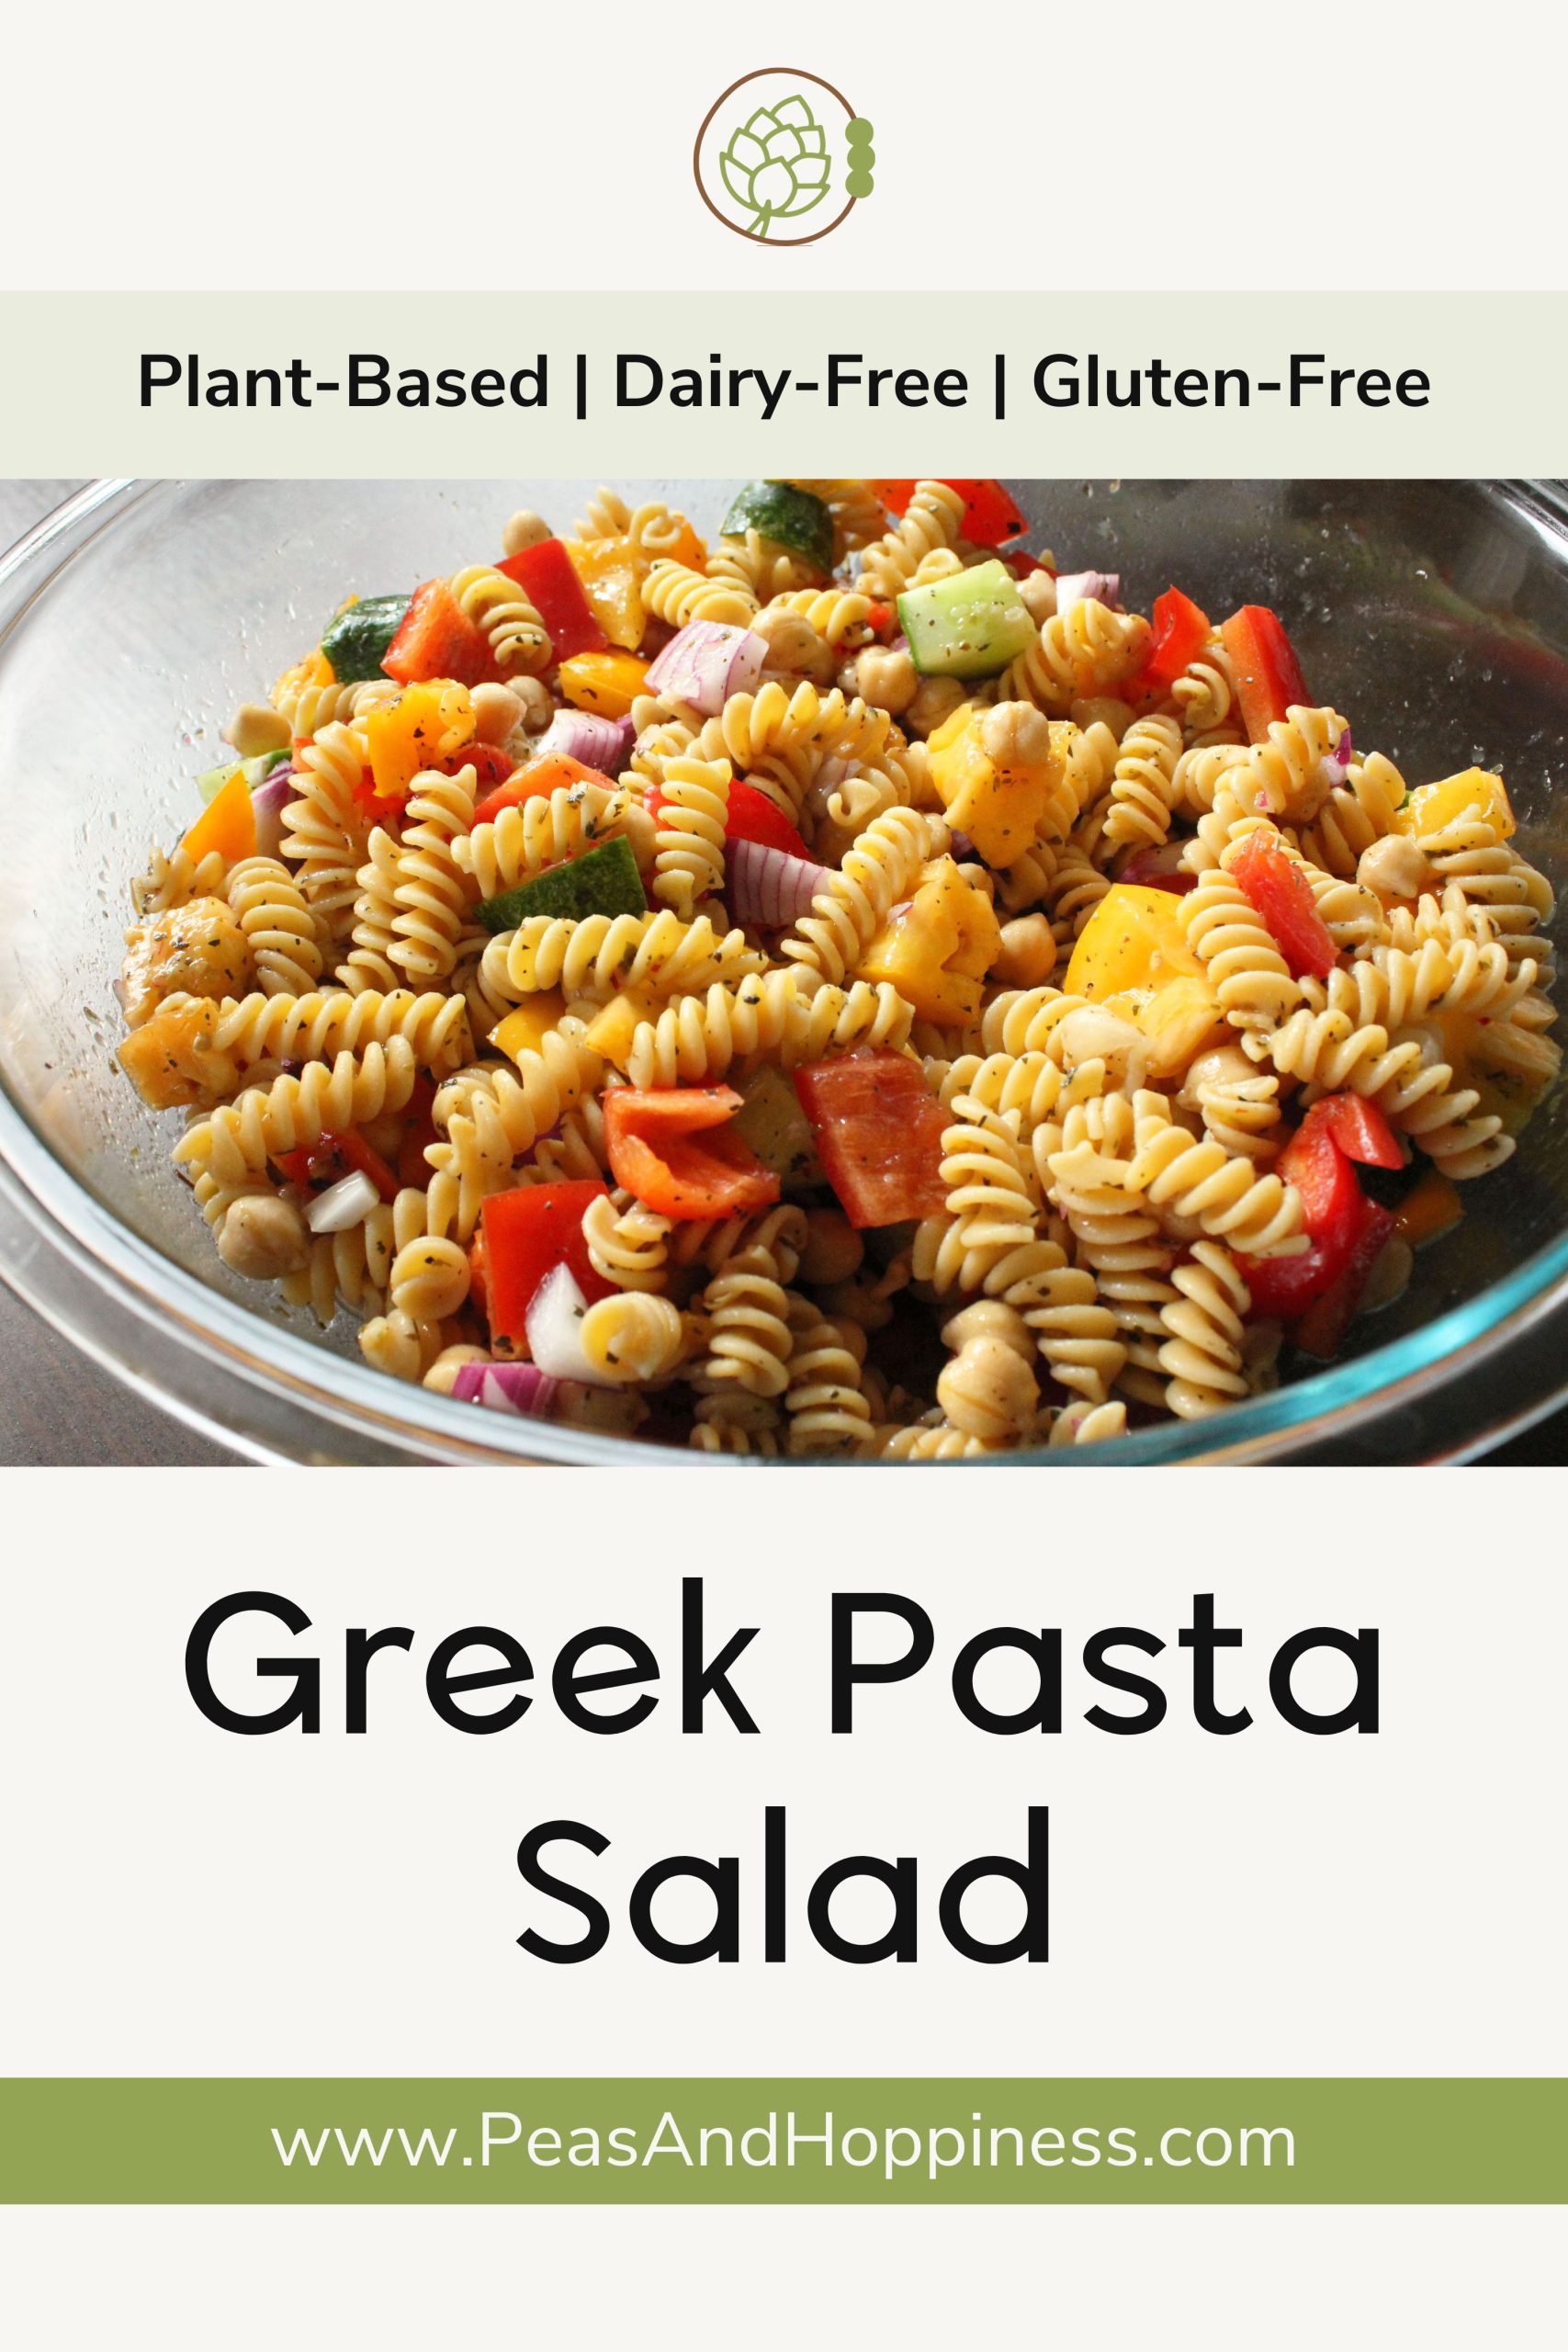 Greek Pasta Salad Recipe - Plant Based Vegan Vegetarian Gluten Free Dairy Free